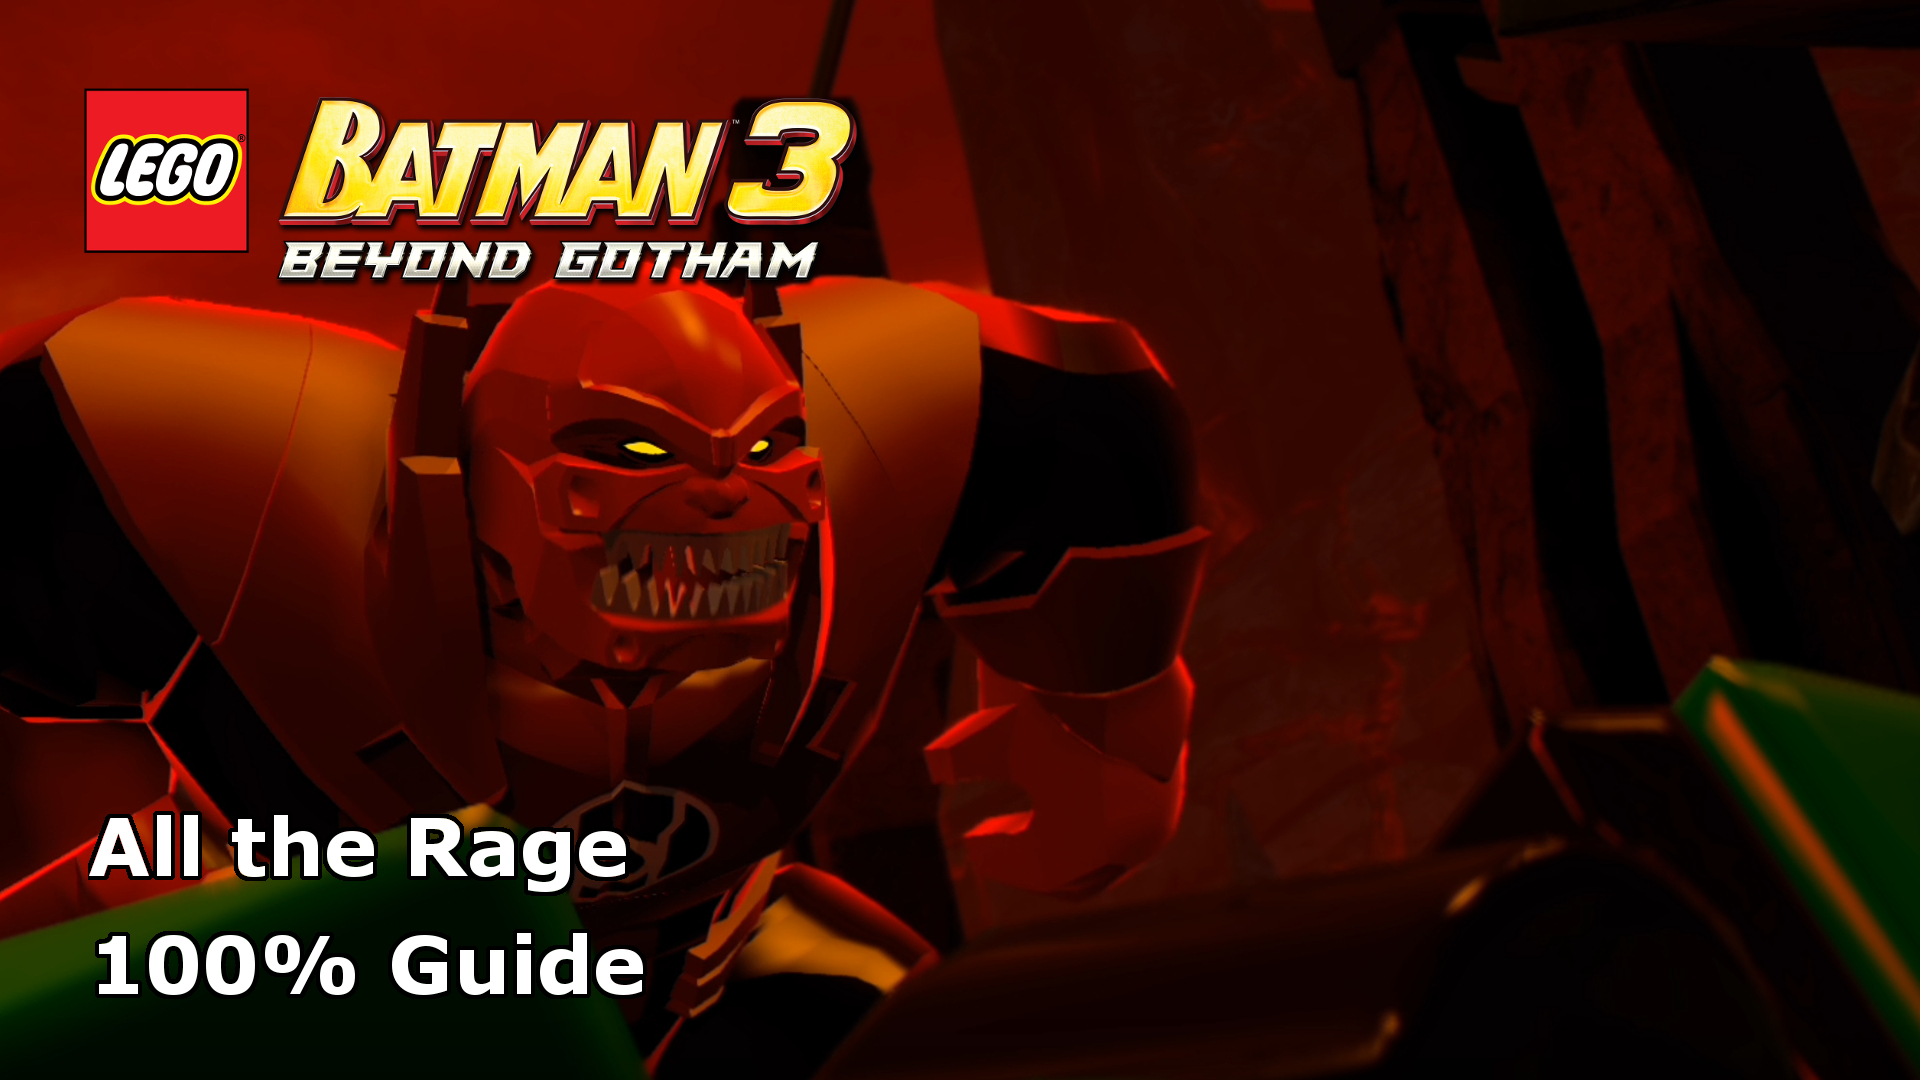 lego batman 3 beyond gotham full movie